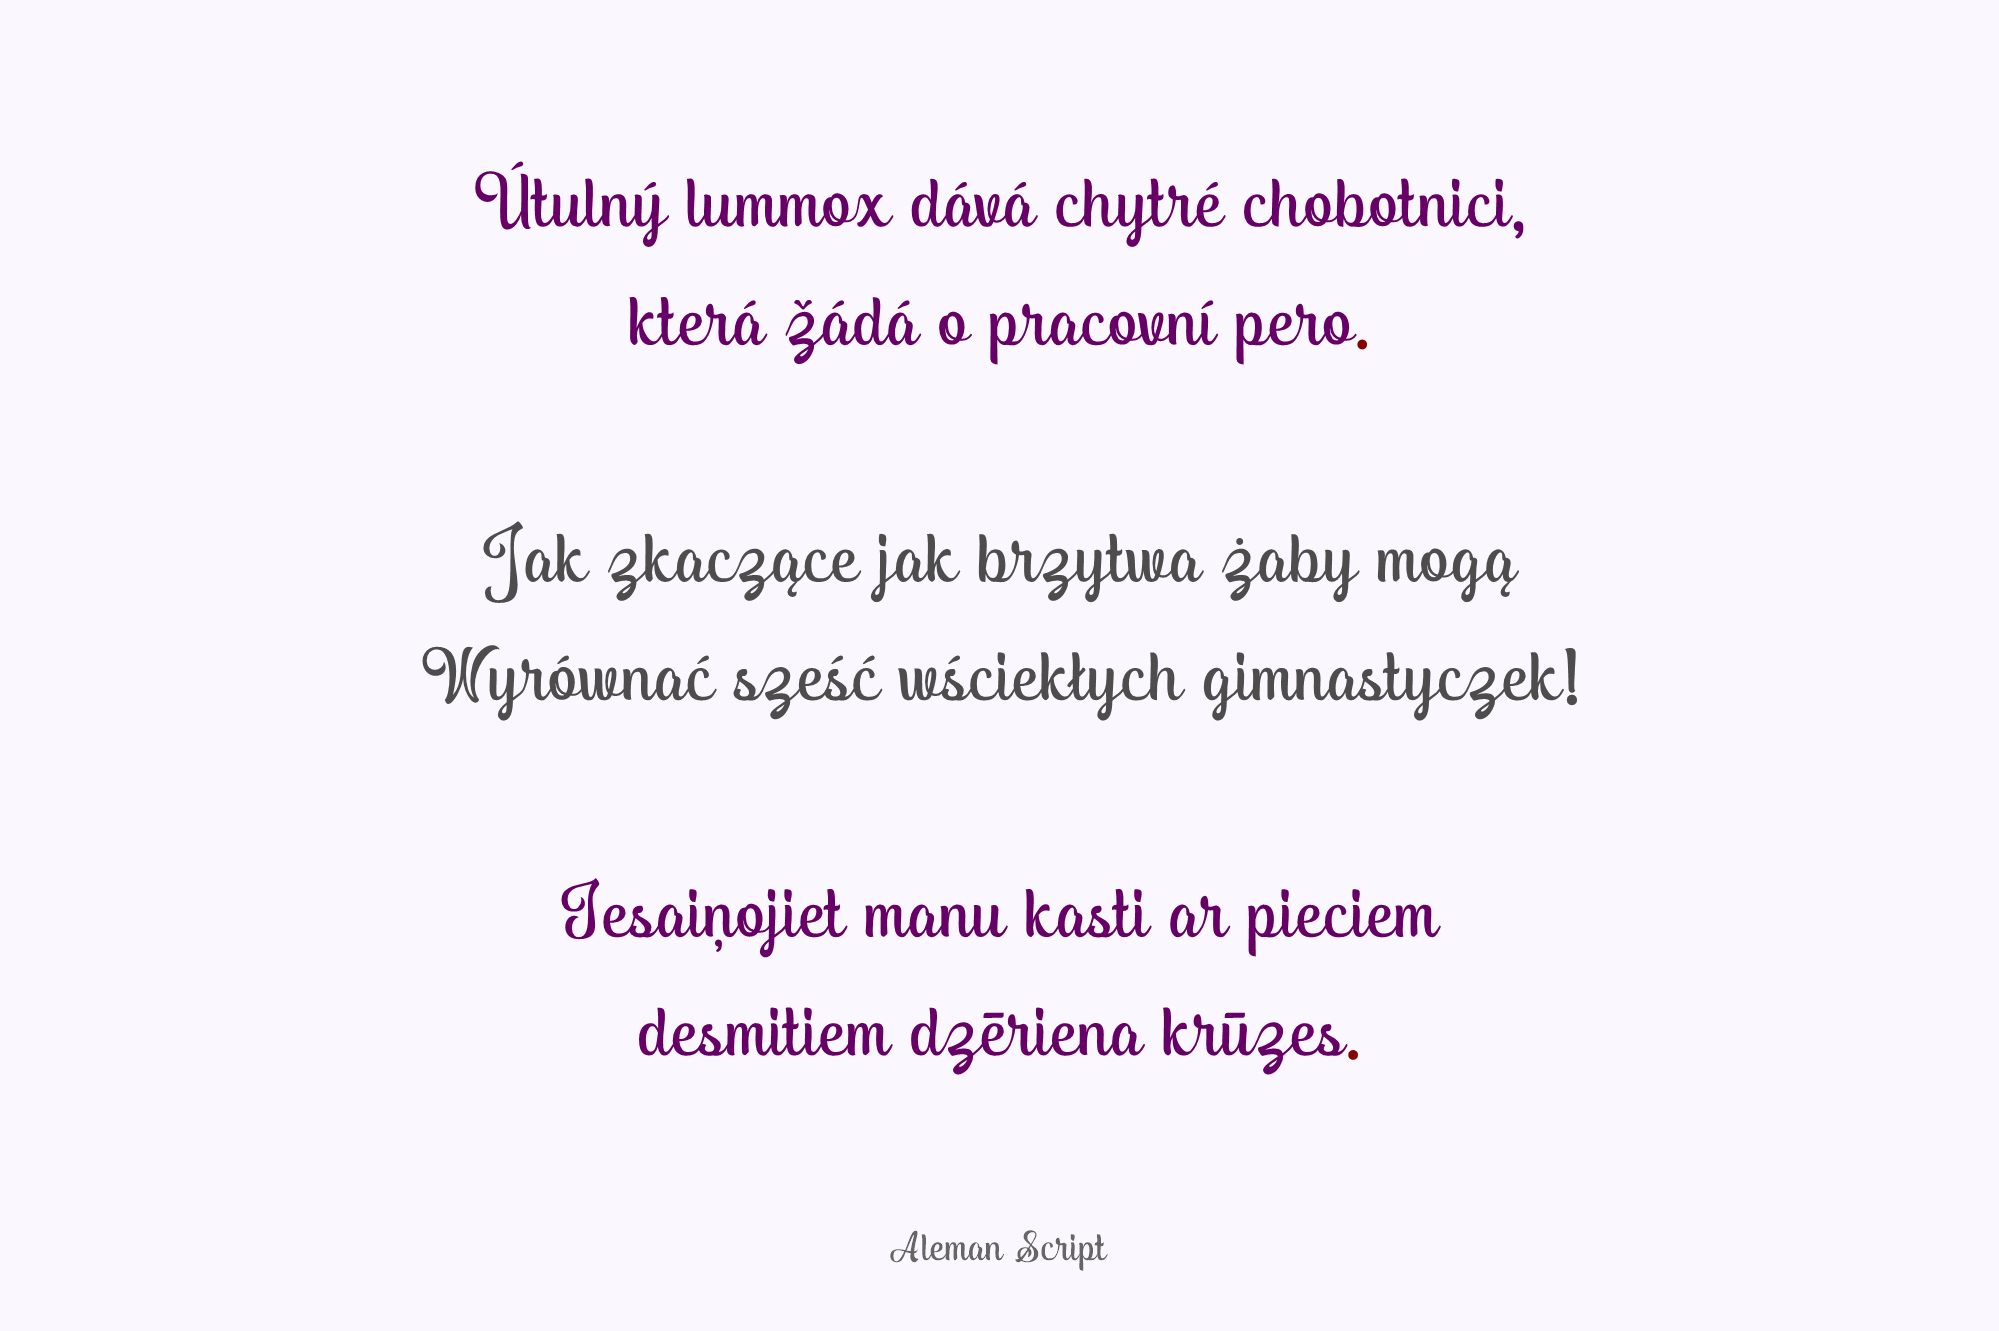 Aleman Script